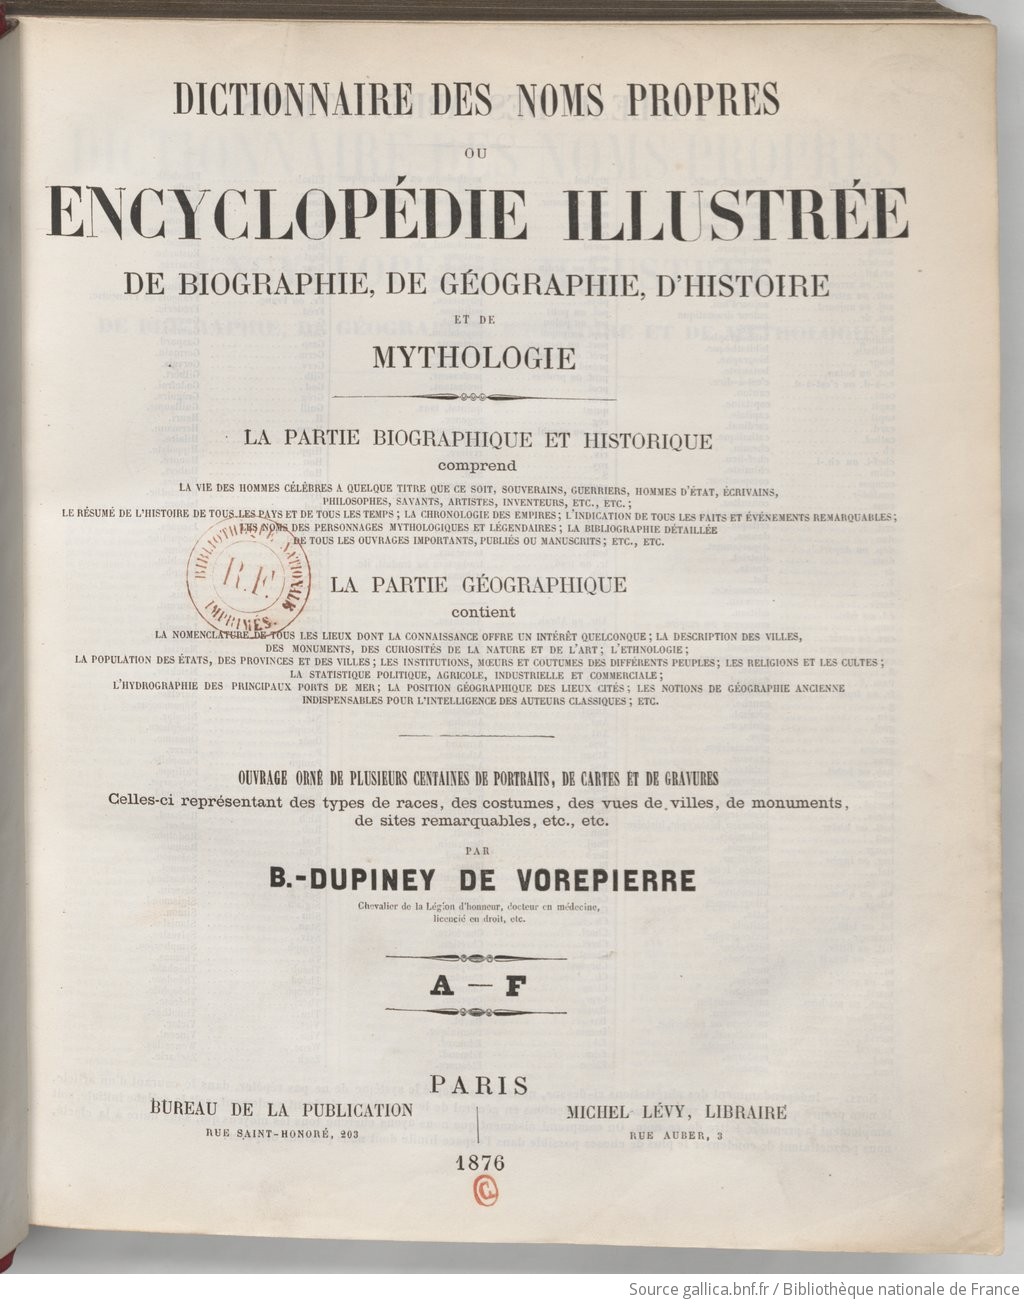 Dictionnaire des noms propres, ou Encyclopédie illustrée de biographie, de géographie, d'histoire et de mythologie.... A-F / par B. Dupiney de Vorepierre,...